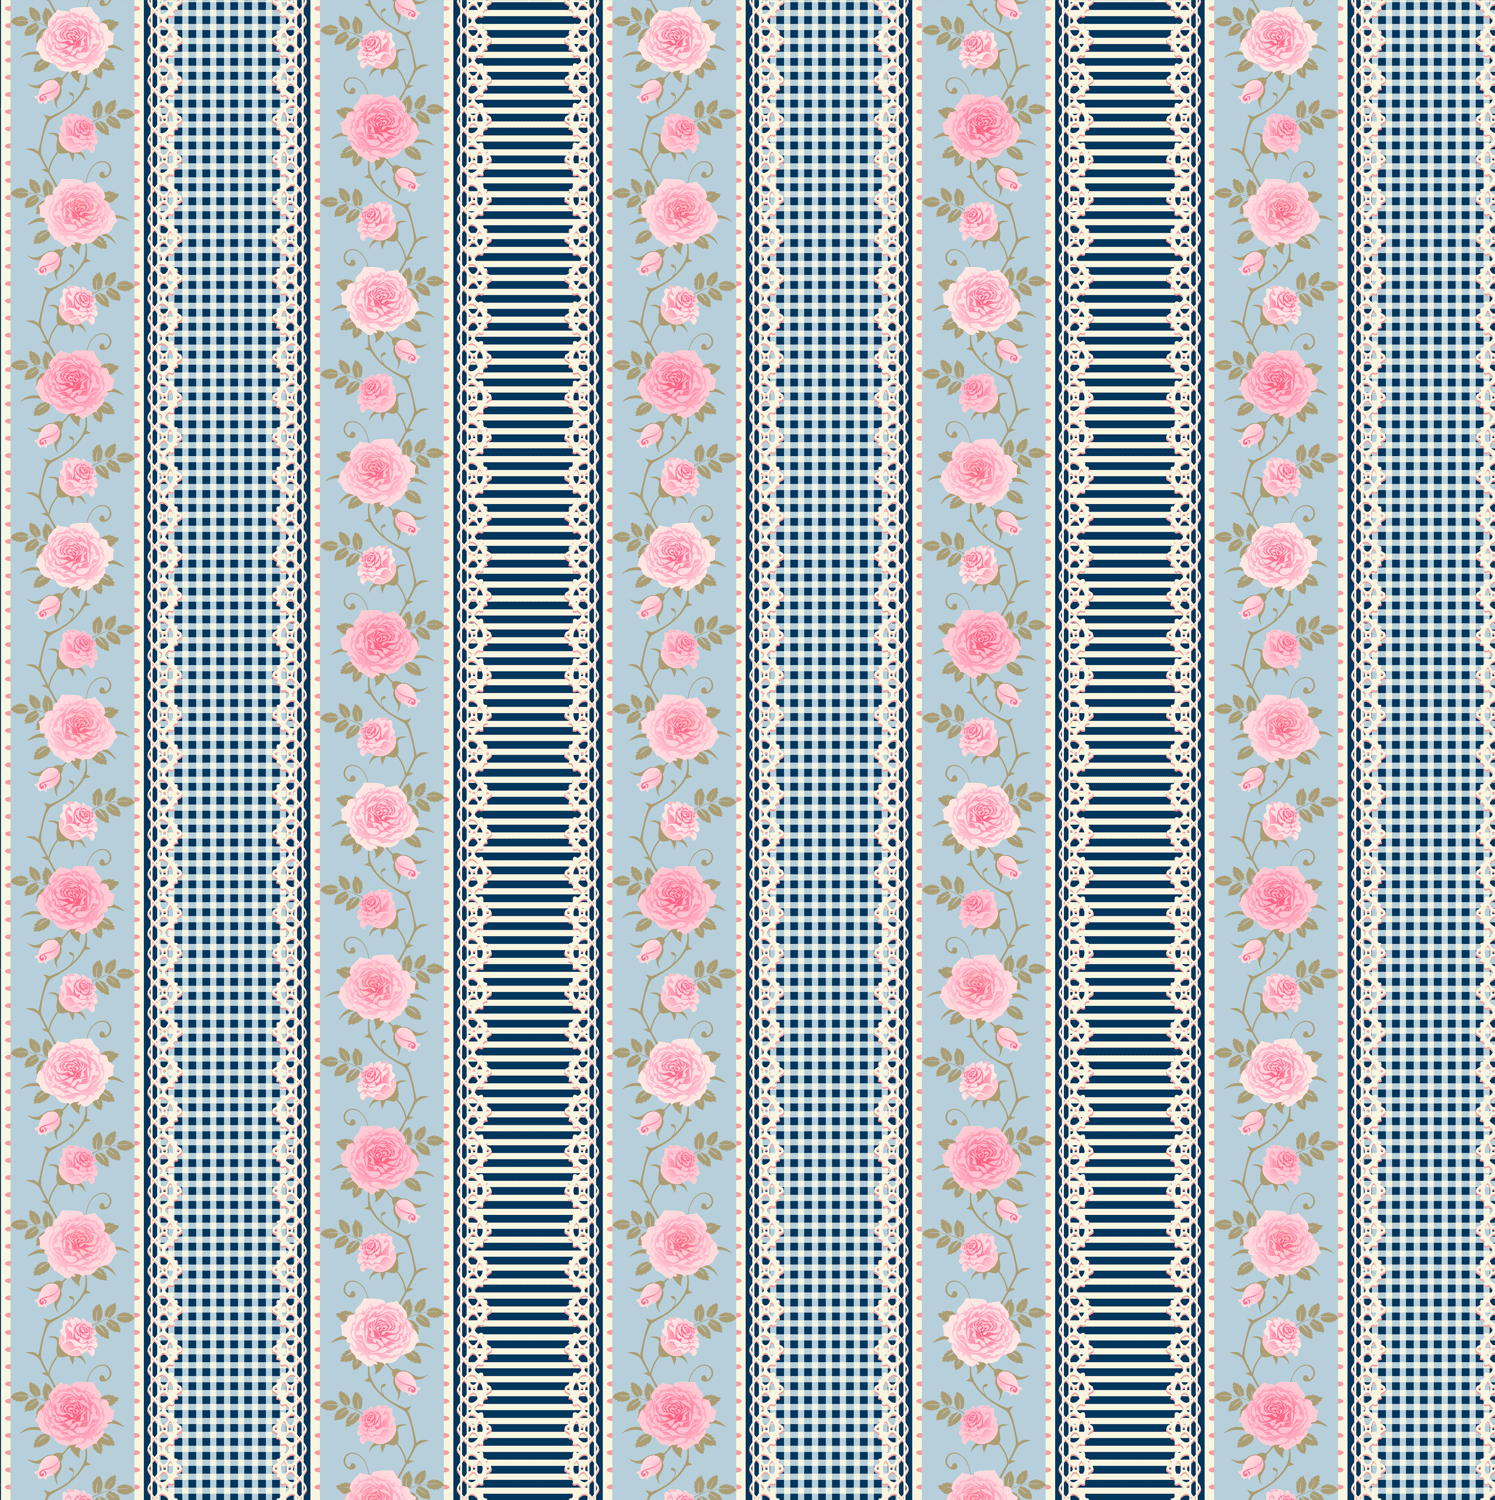 Tecido Tricoline Estampado Digital Barrado Floral Listrado e Xadrez Marinho e Azul Bebê 9100e5687